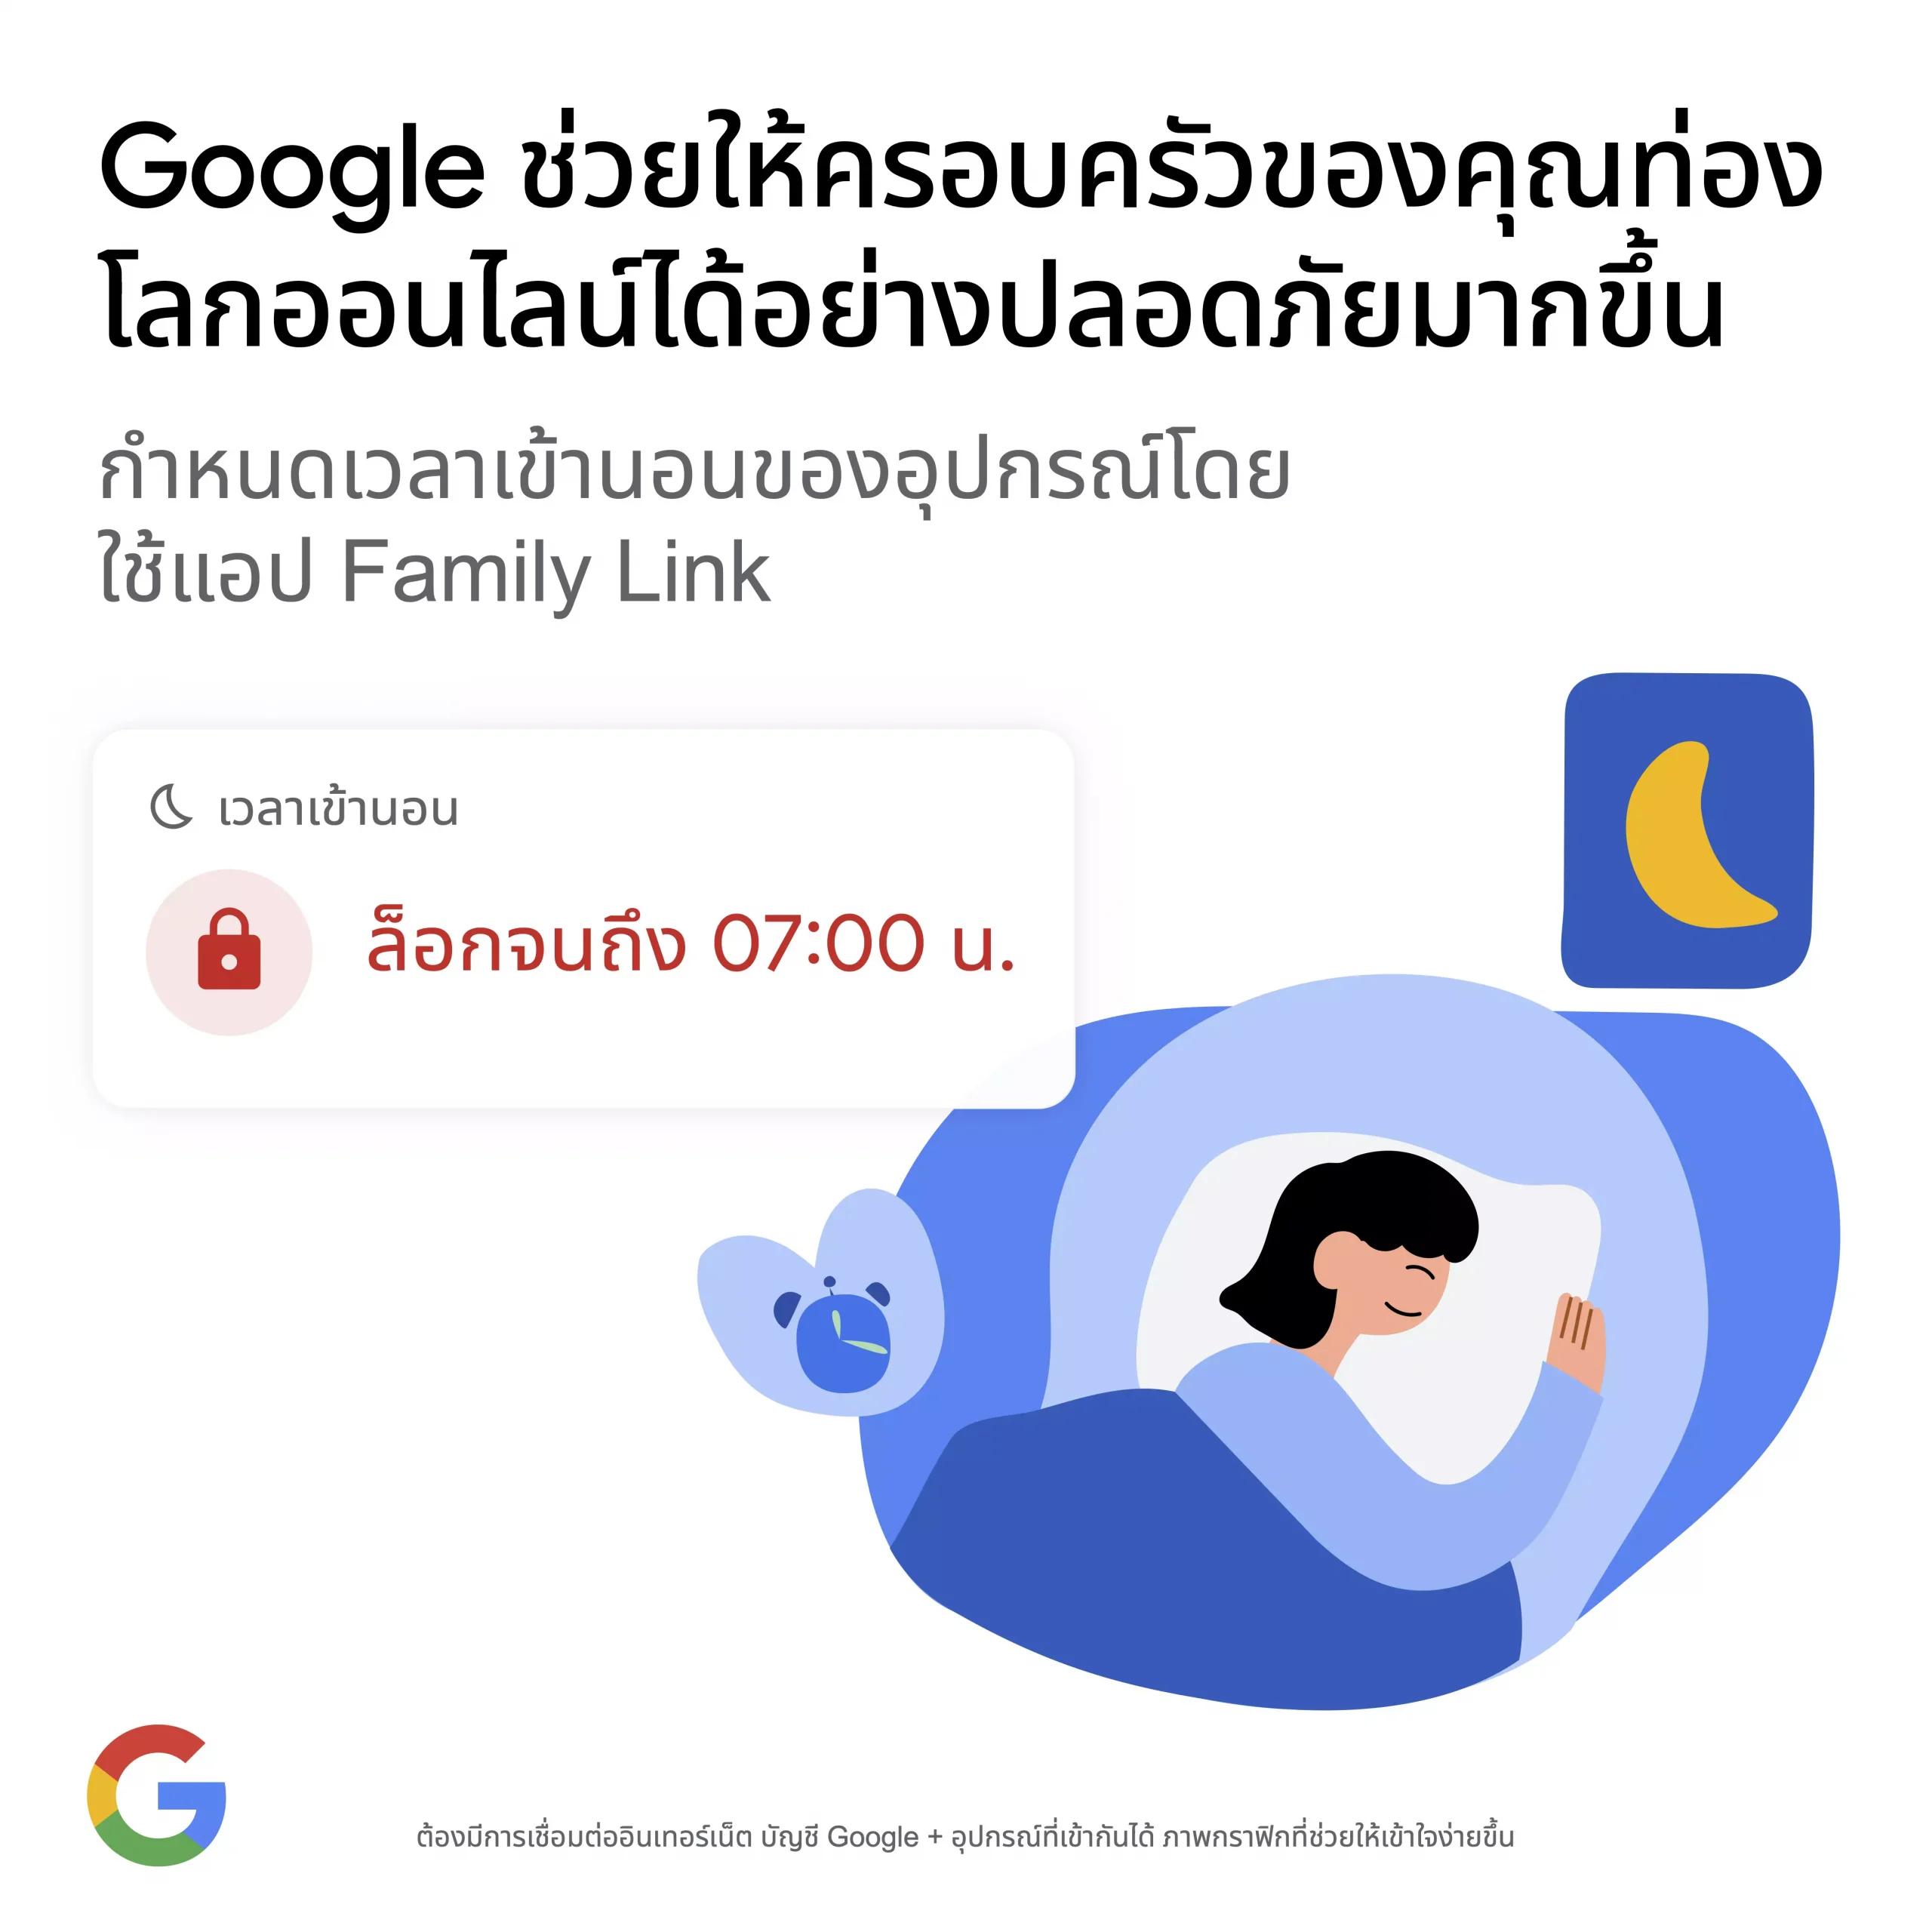 Family Linkเพิ่มความปลอดภัยบนโลกออนไลน์